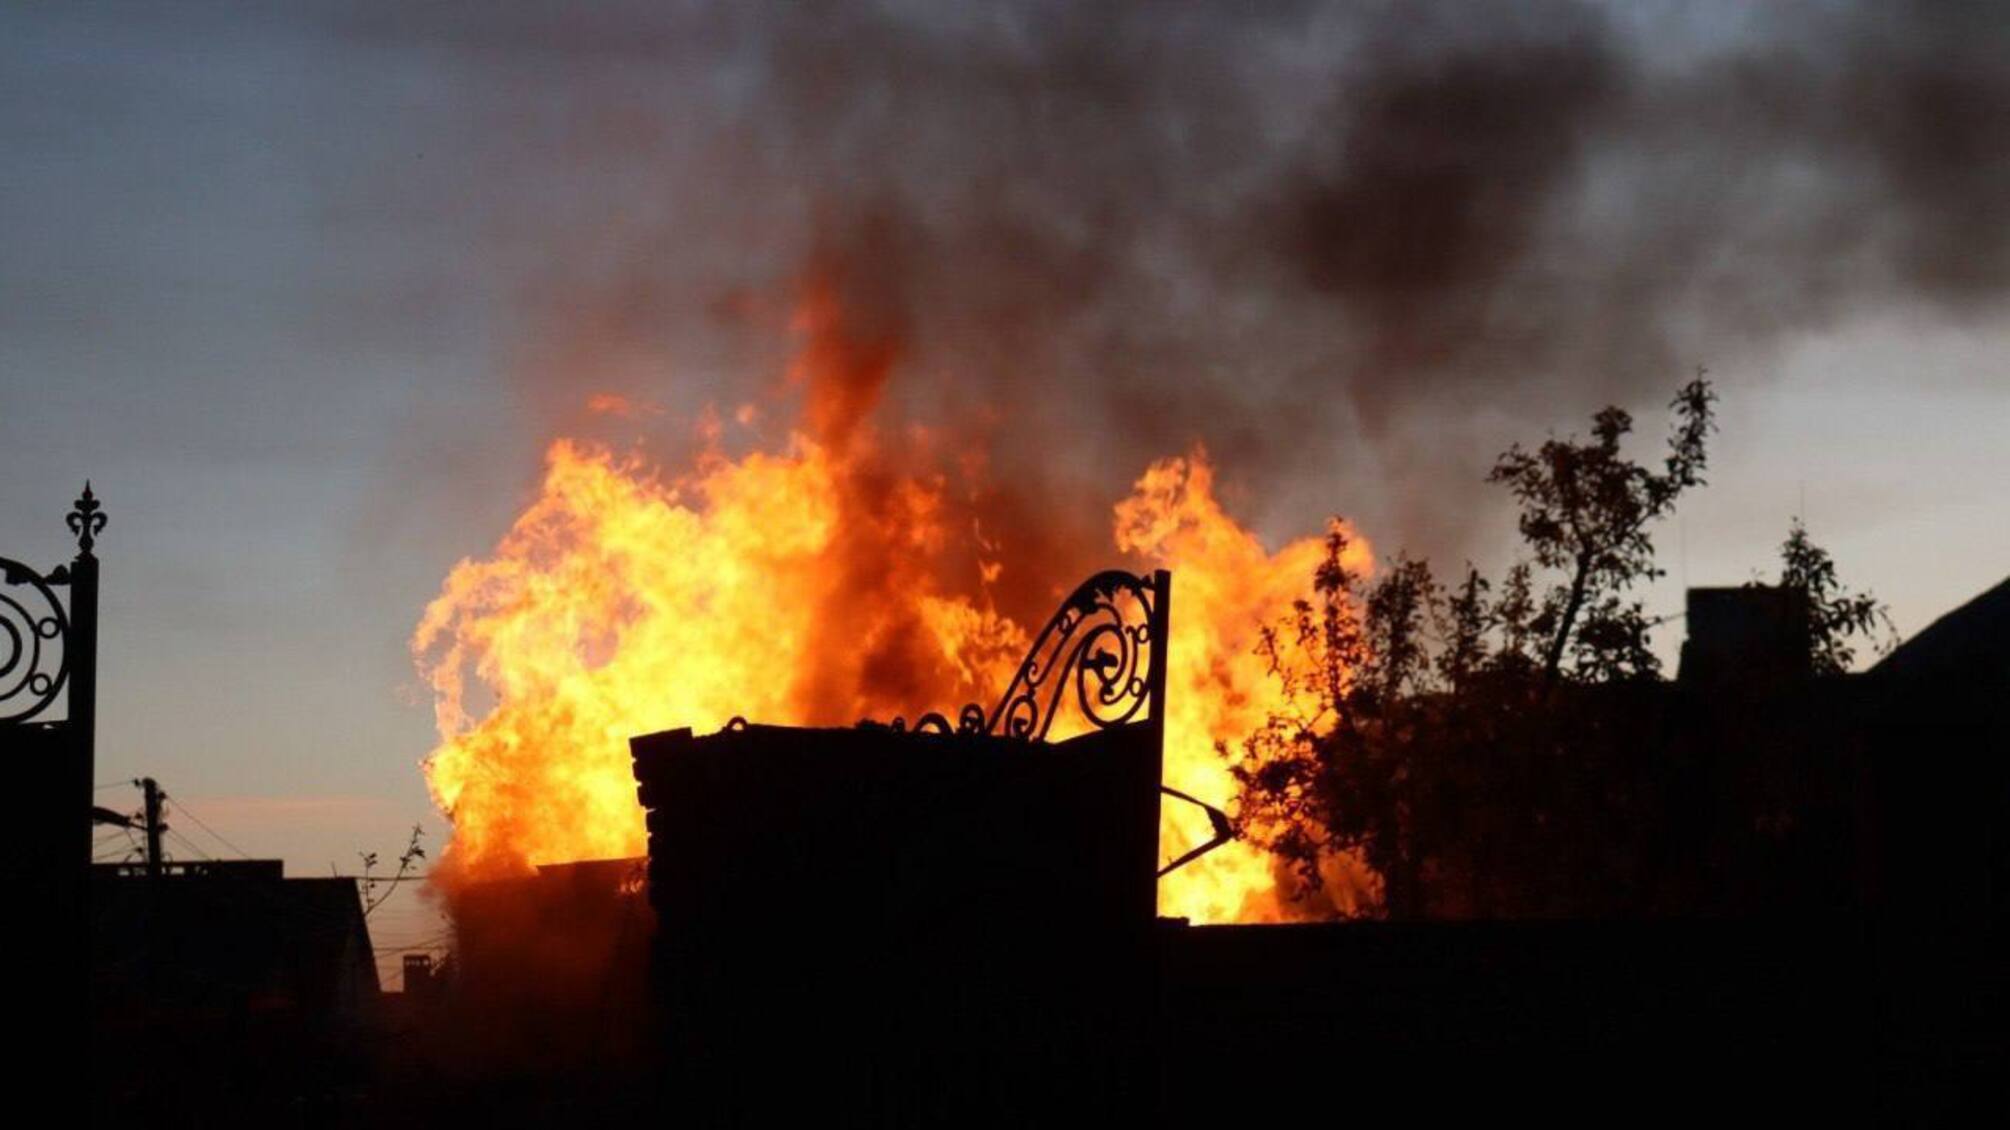 Харьков под обстрелом: двое пострадавших, пожар и разрушение от российских снарядов